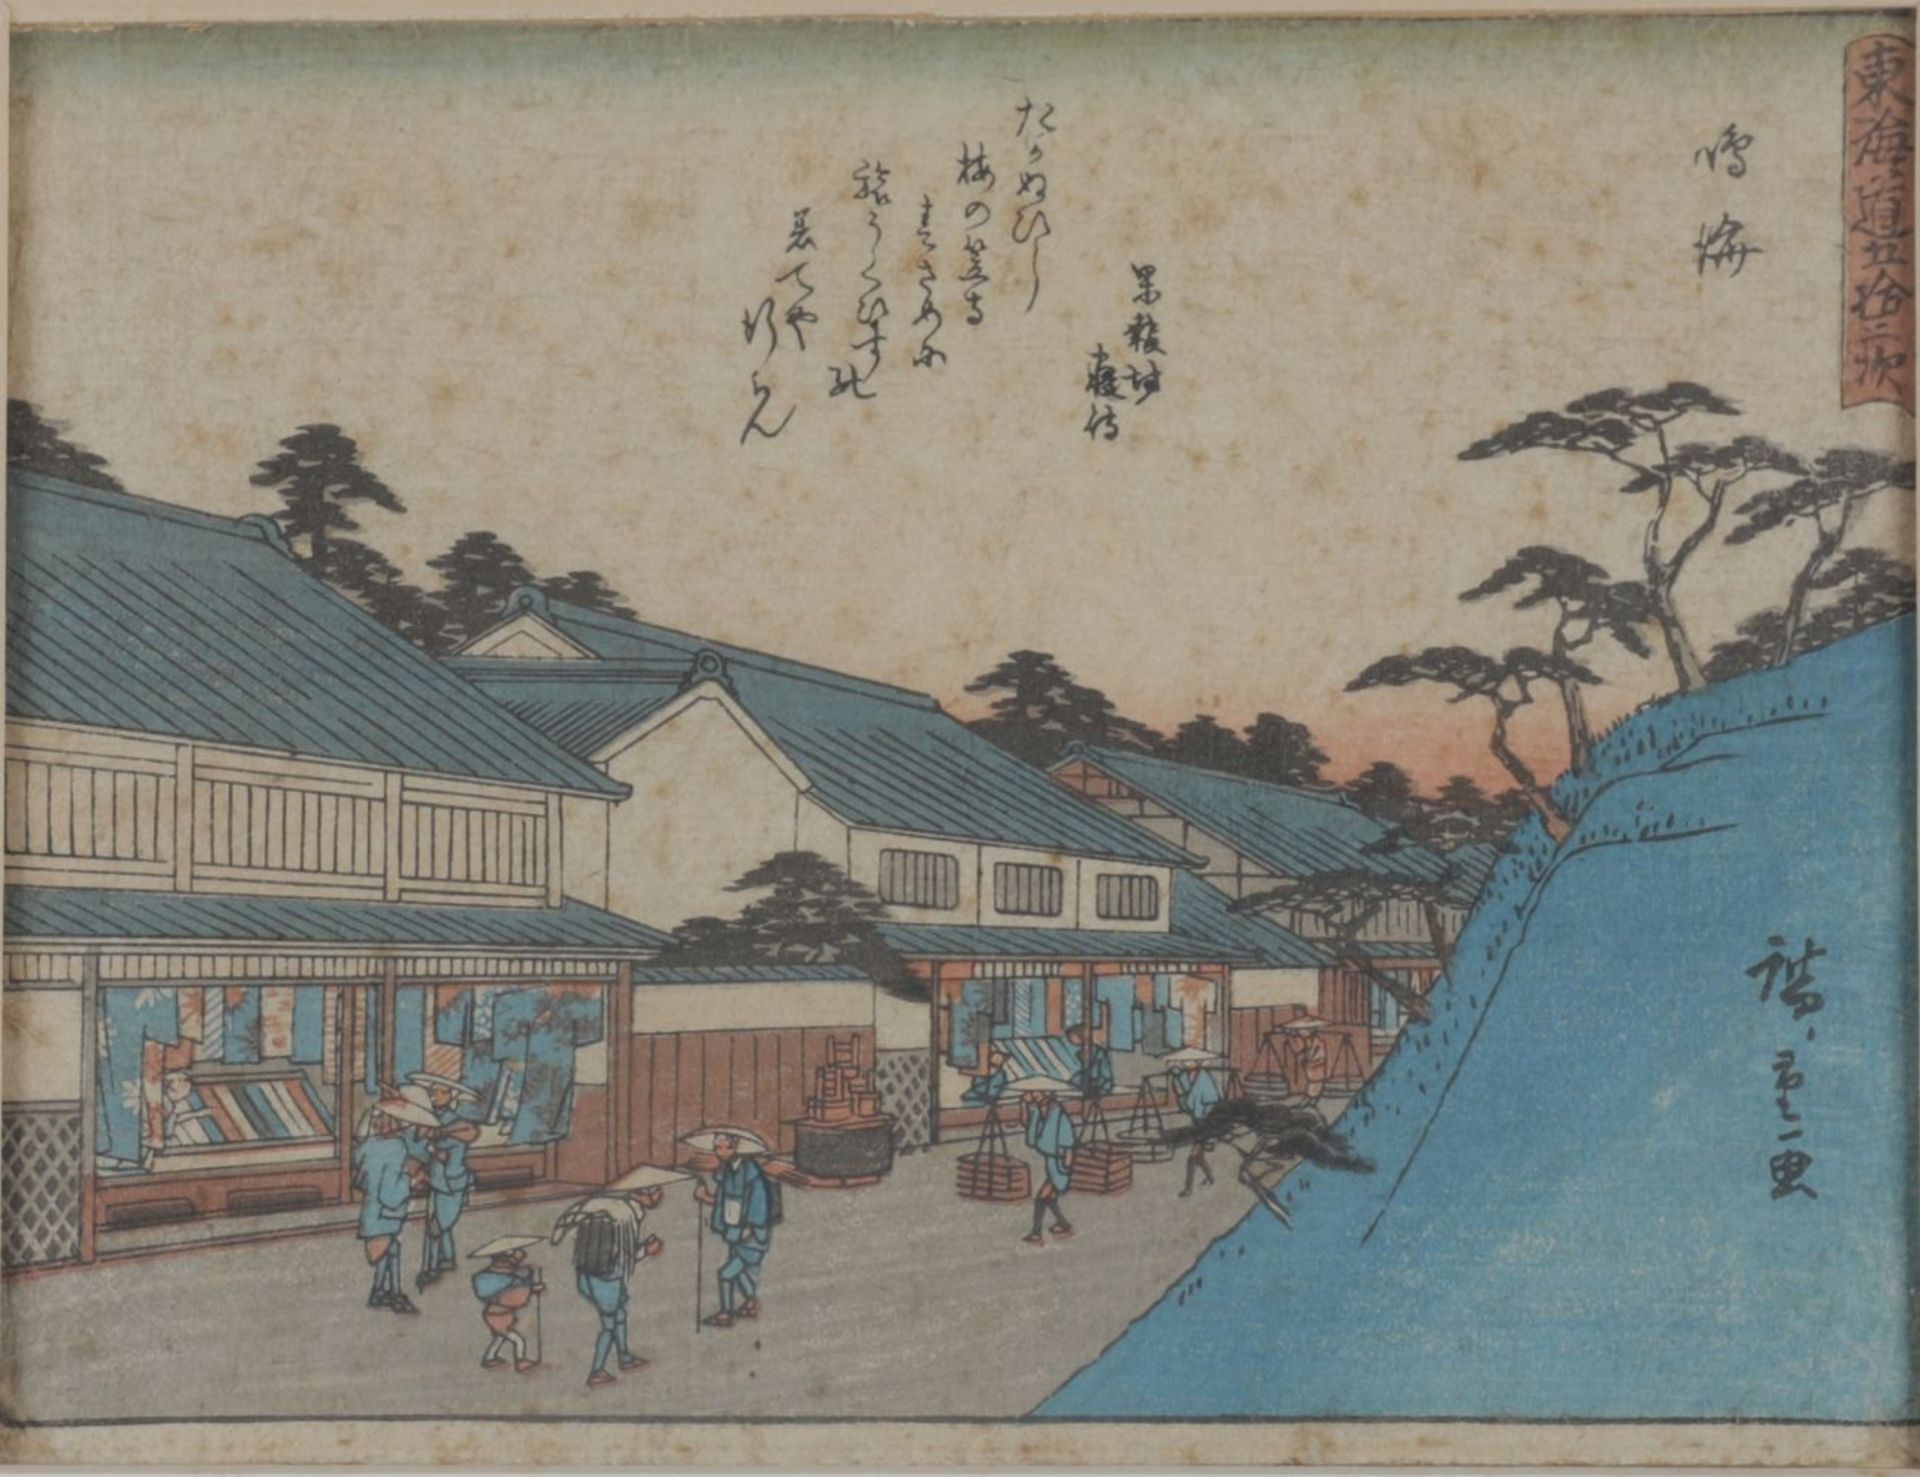 UTAGAWA HIROSHIGE (1797 - 1855)